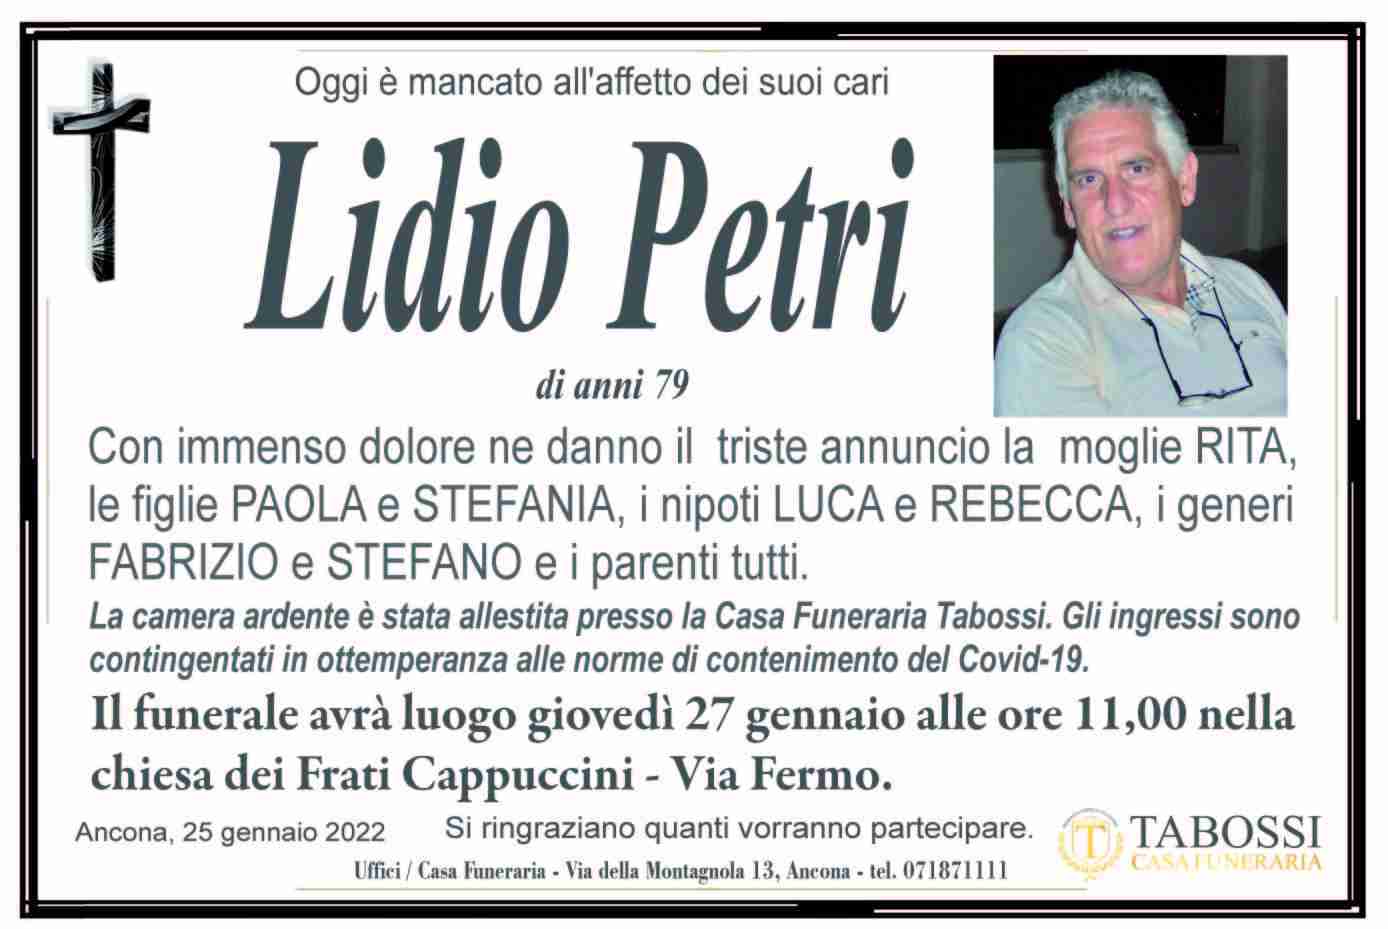 Lidio Petri